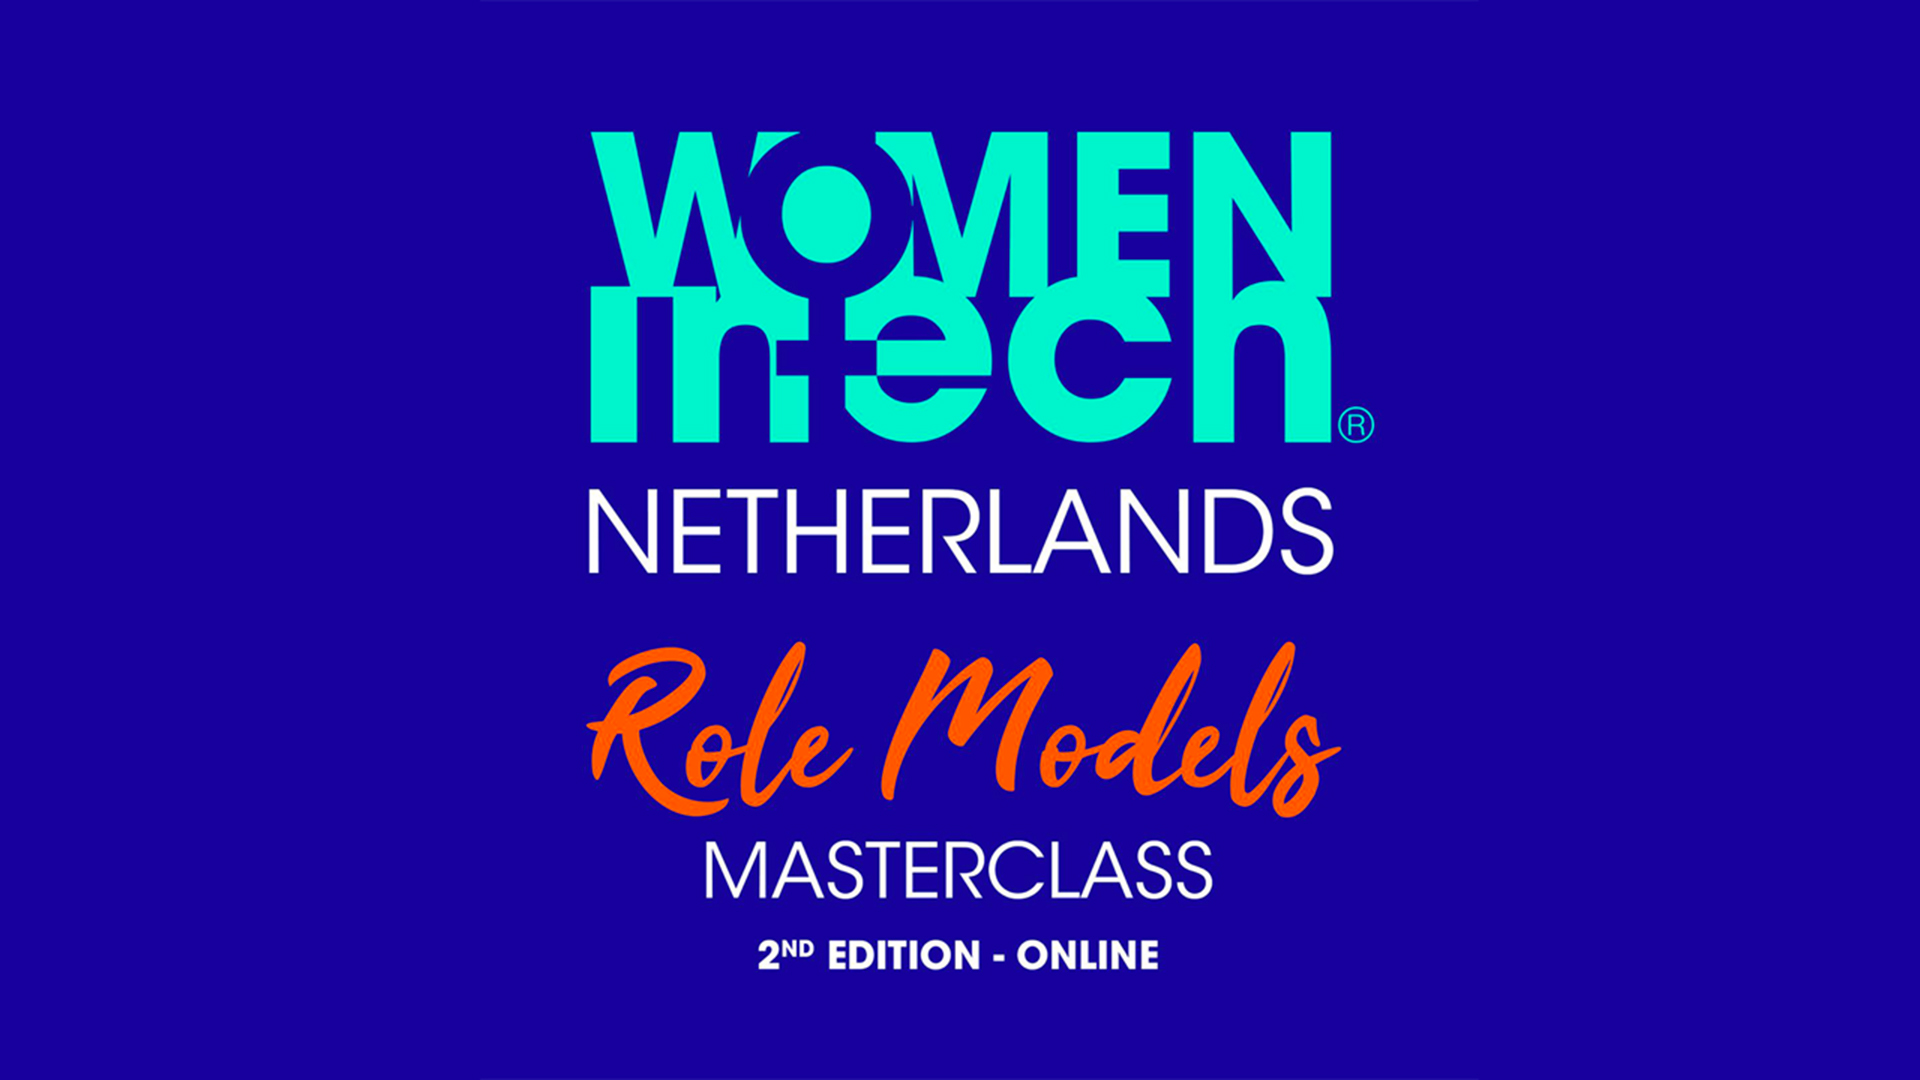 Role Models Masterclass – by Women in Tech Netherlands